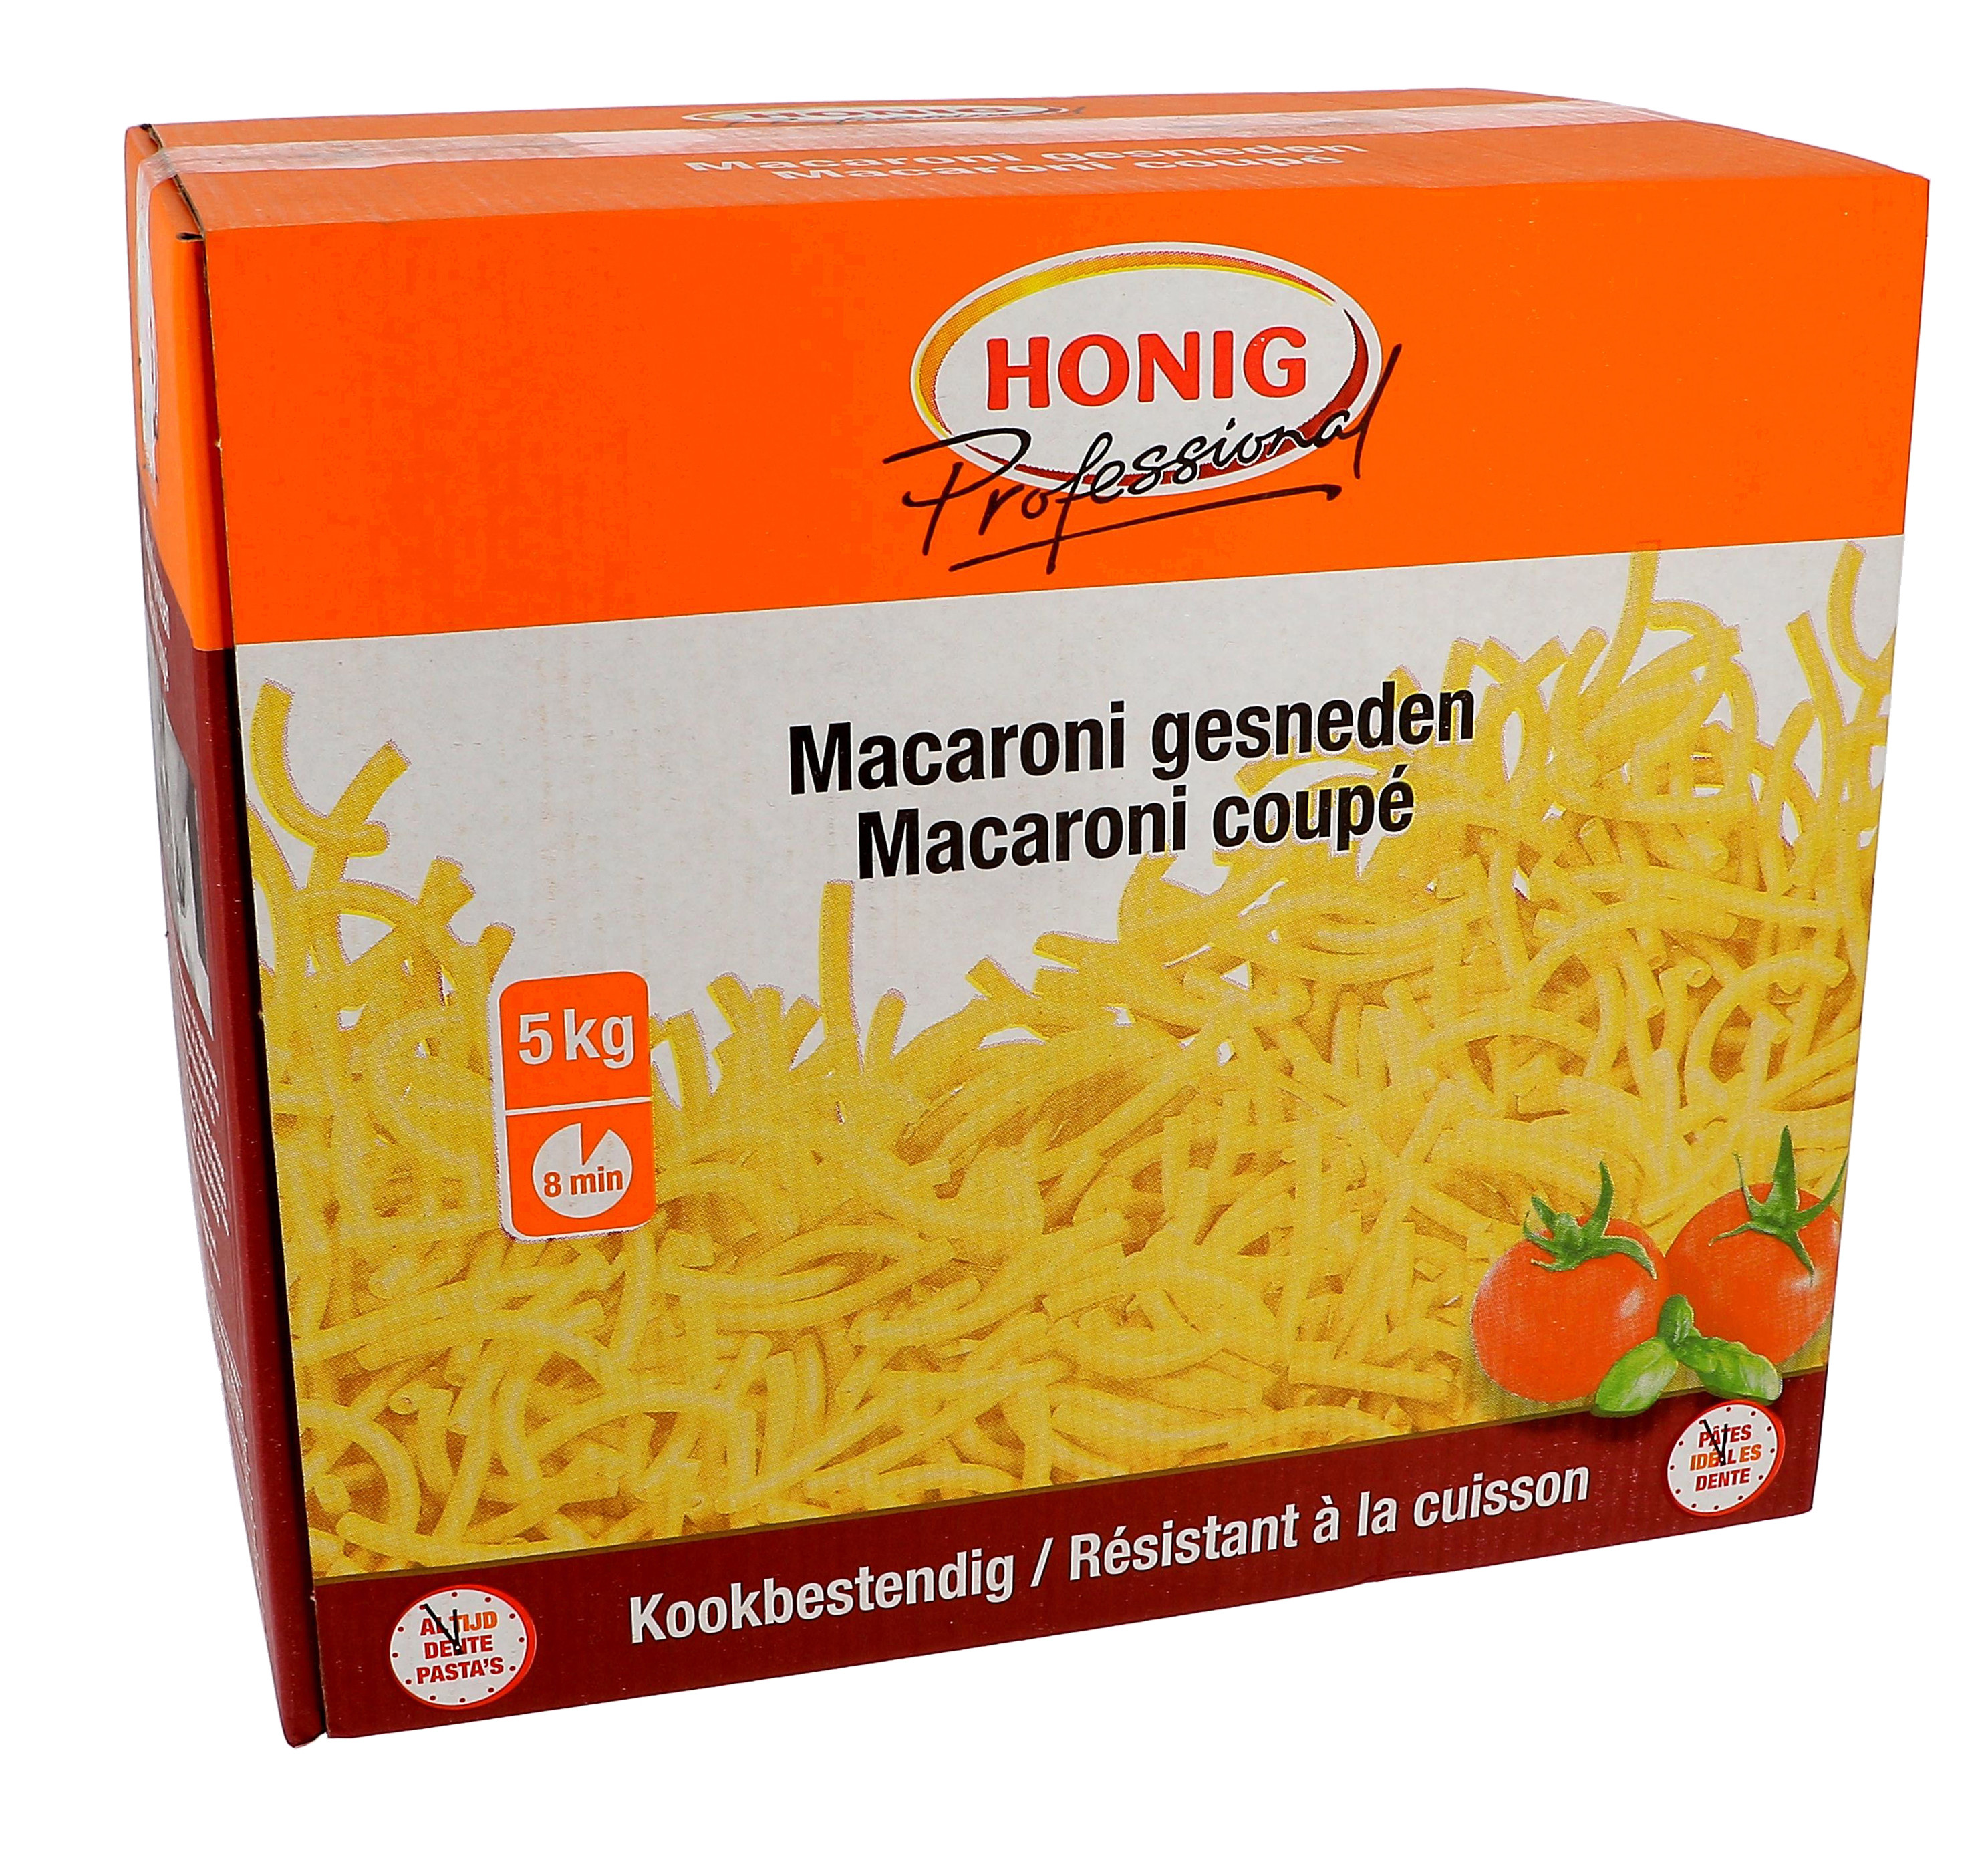 Honig pates macaroni coupé 5kg Professional resistant à la cuisson